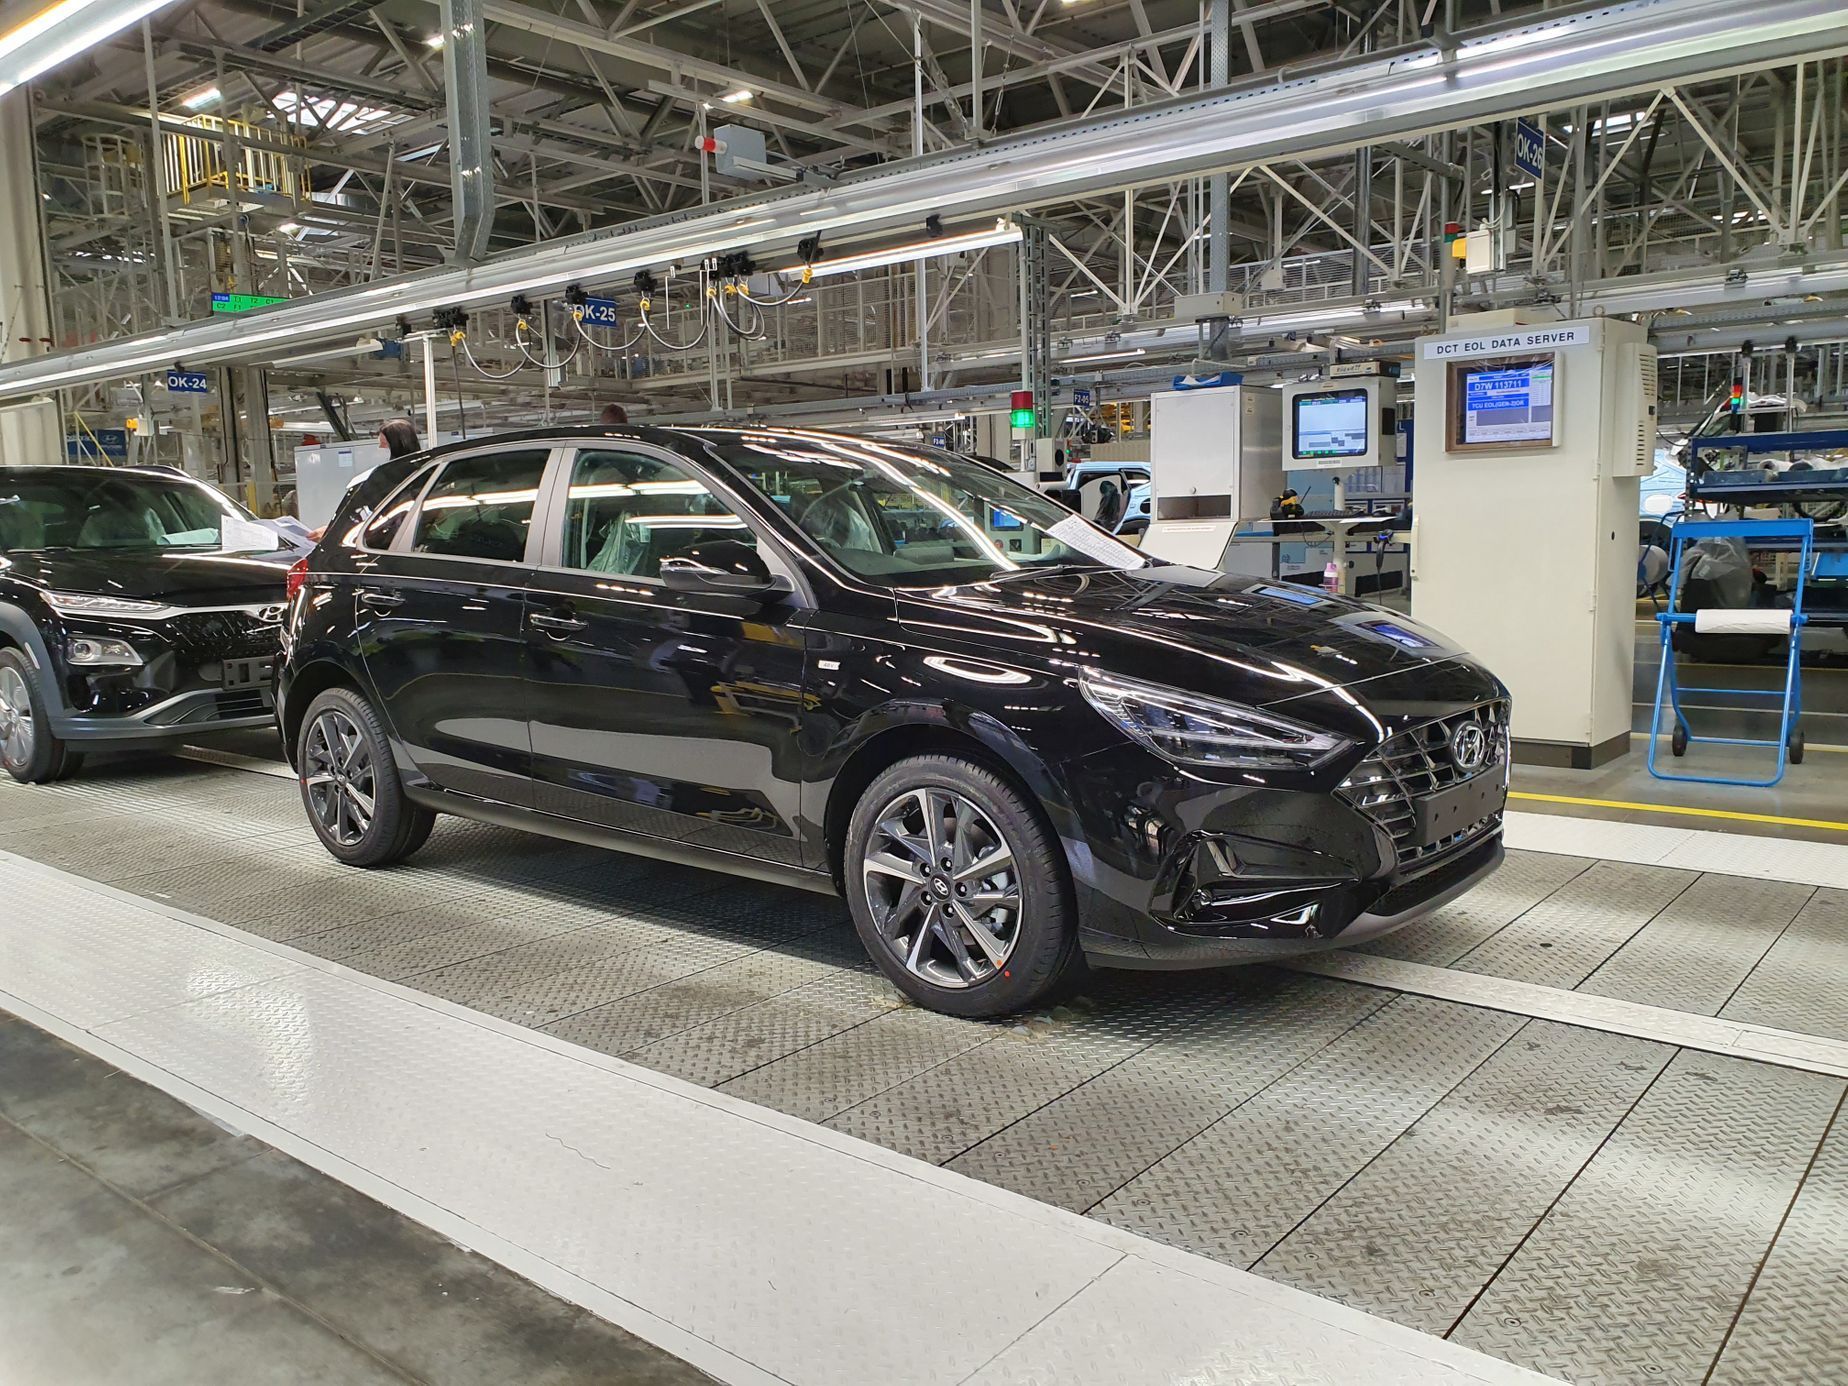 Hyundai Nošovice výroba